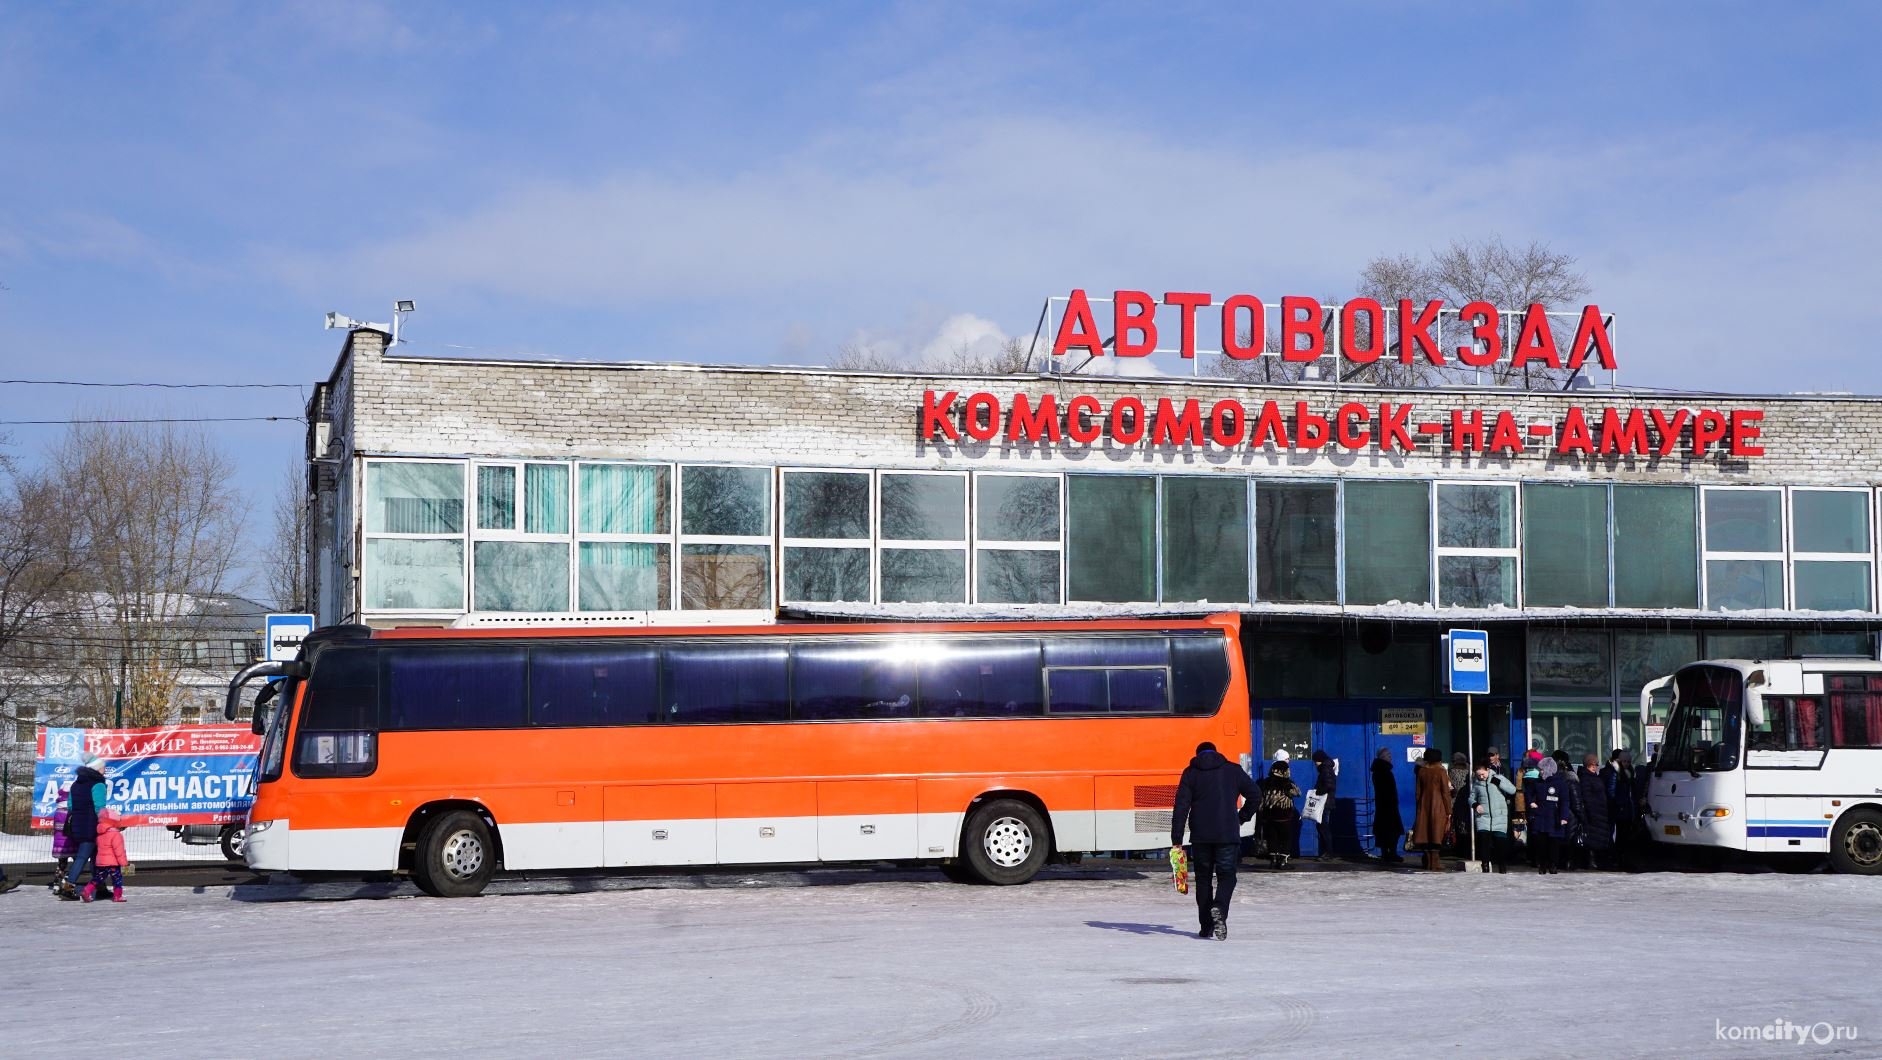 Телефон автовокзала комсомольска. Автовокзал города Комсомольск-на-Амуре. Автовокзал Комсомольск на Амуре. Автобусный парк Комсомольска на Амуре. Автобус Комсомольск 301 в.